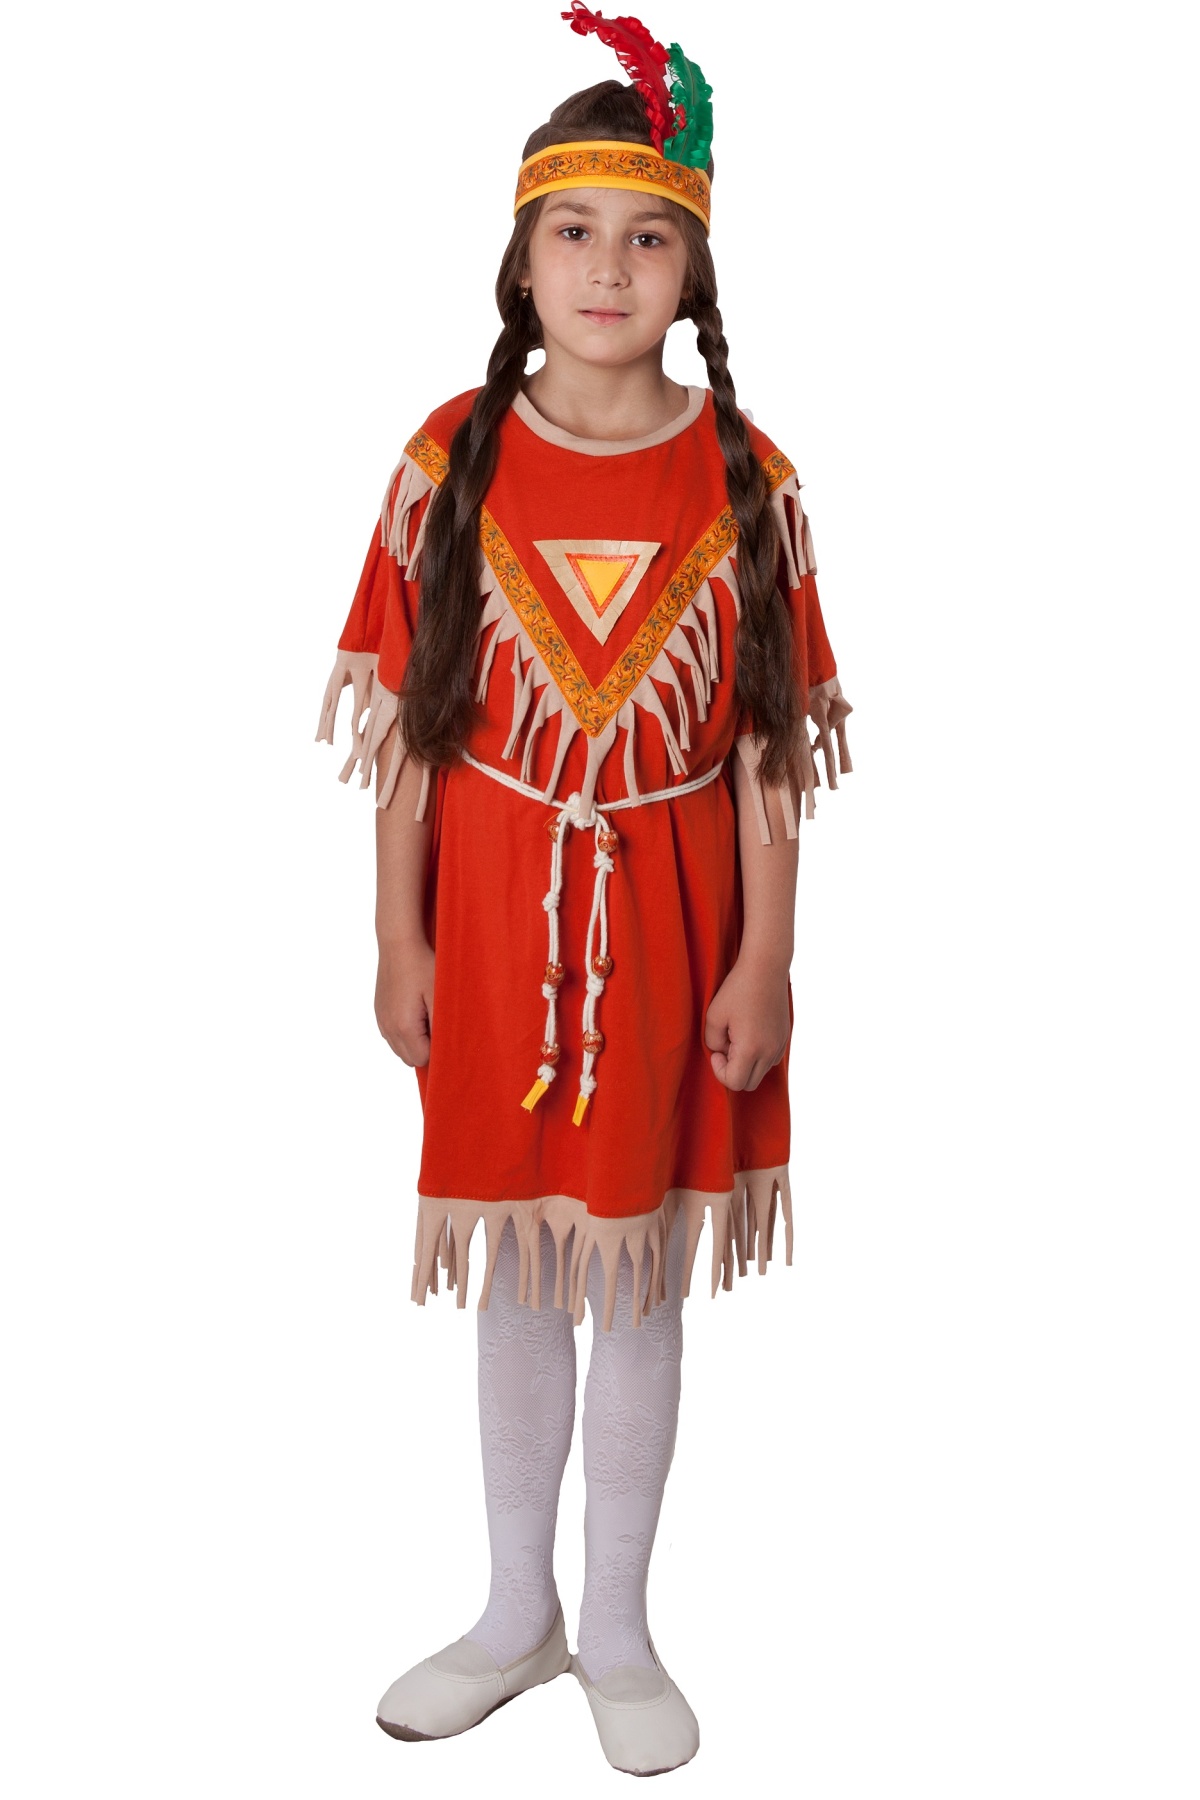 Костюм индейца (девочка): платье, головной убор, веревочный поясок